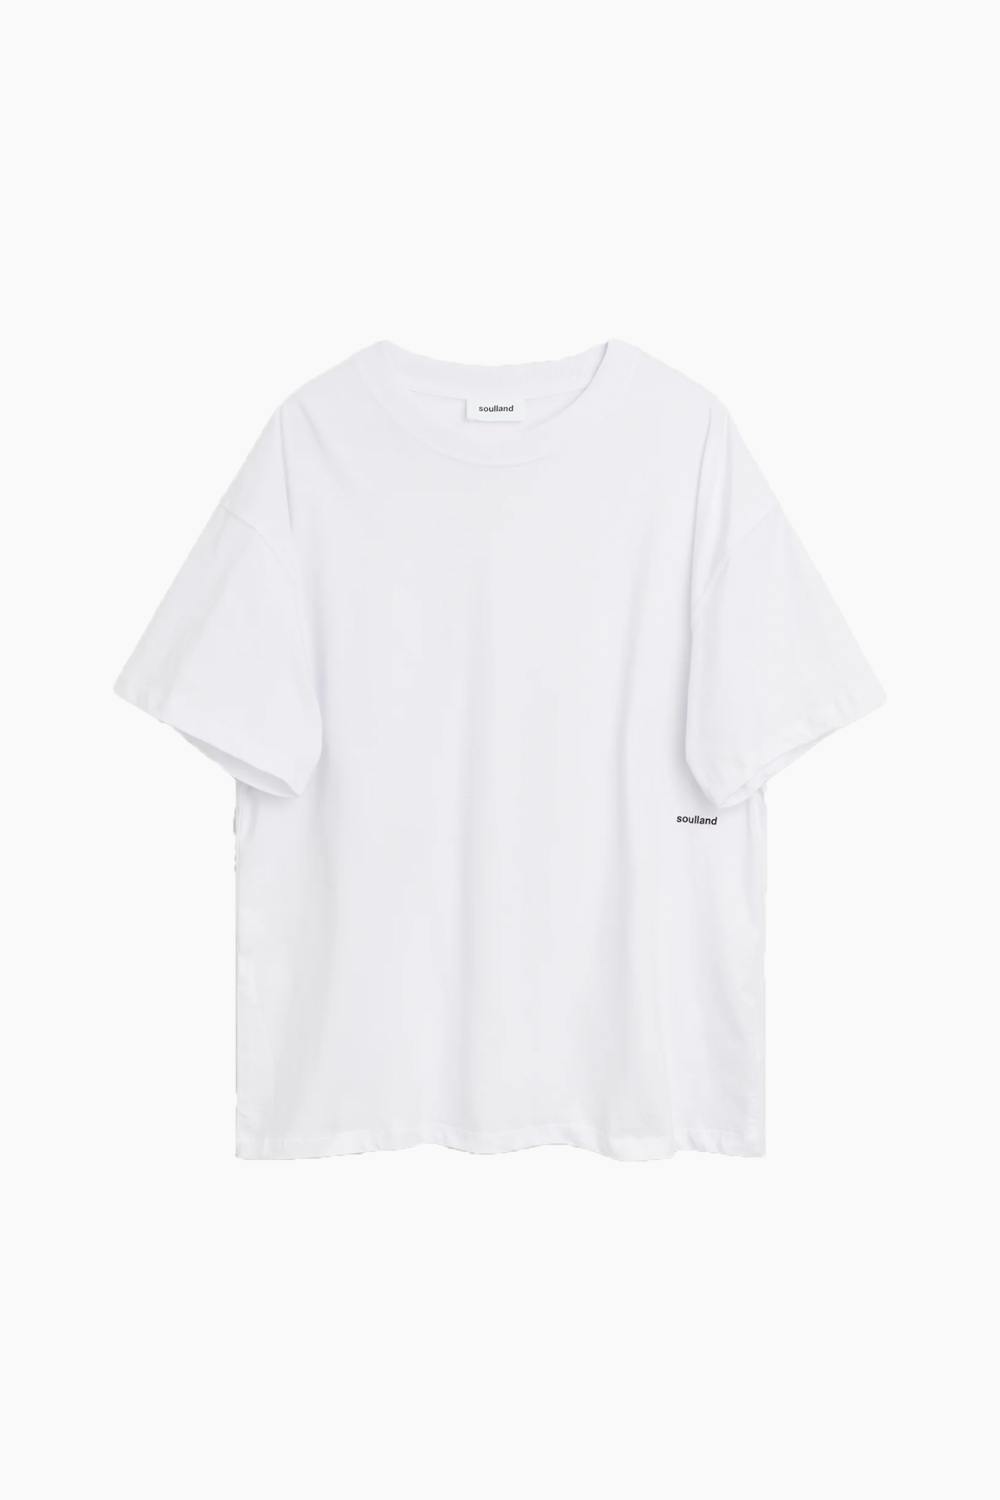 Se Ash T-shirt - White - Soulland - Hvid XXS/XS hos QNTS.dk